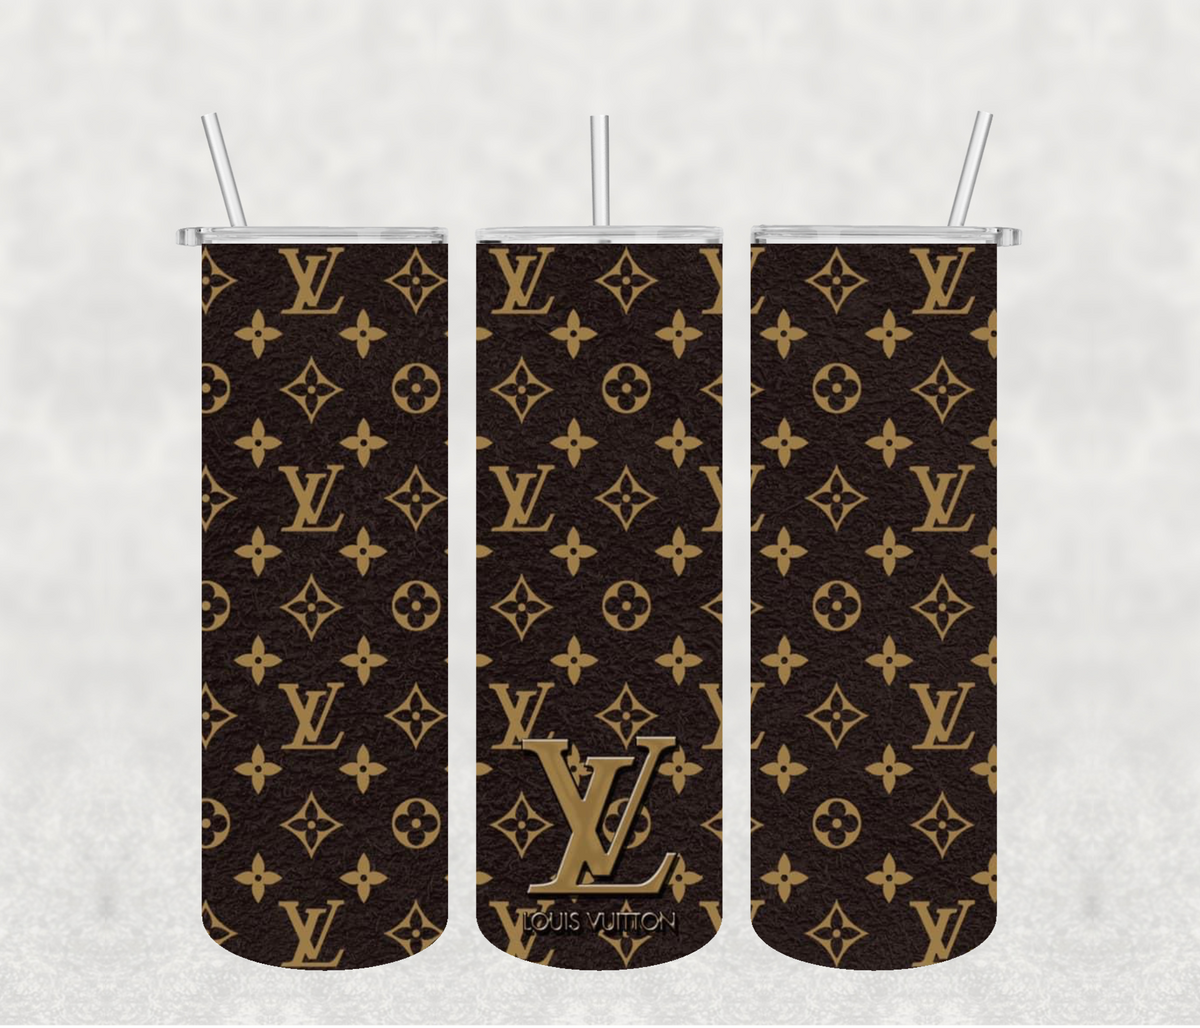 Louis Vuitton Sublimation Designs 